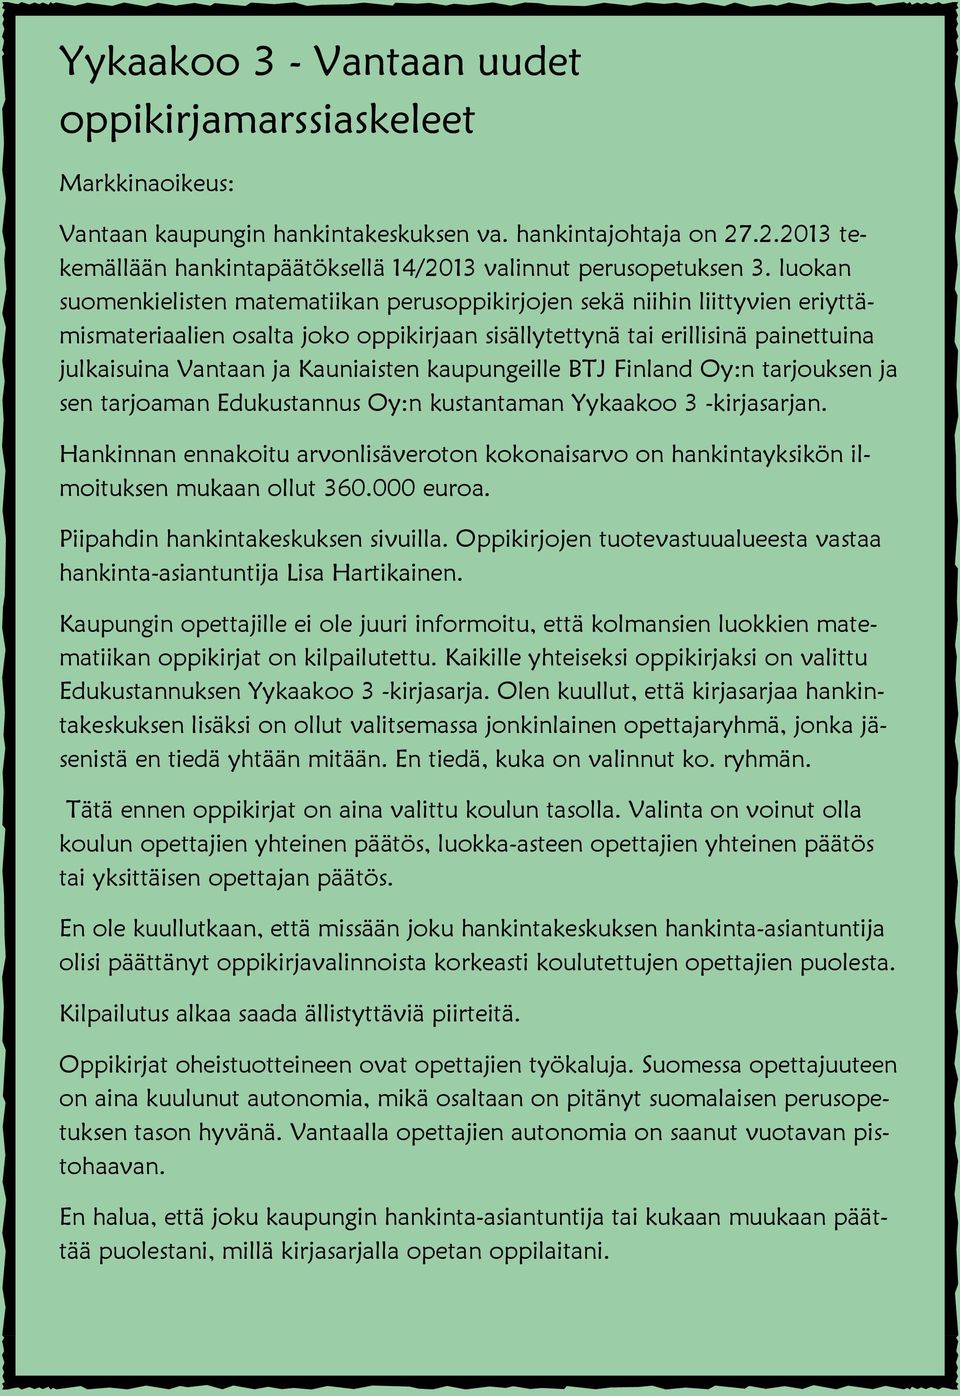 Kauniaisten kaupungeille BTJ Finland Oy:n tarjouksen ja sen tarjoaman Edukustannus Oy:n kustantaman Yykaakoo 3 -kirjasarjan.